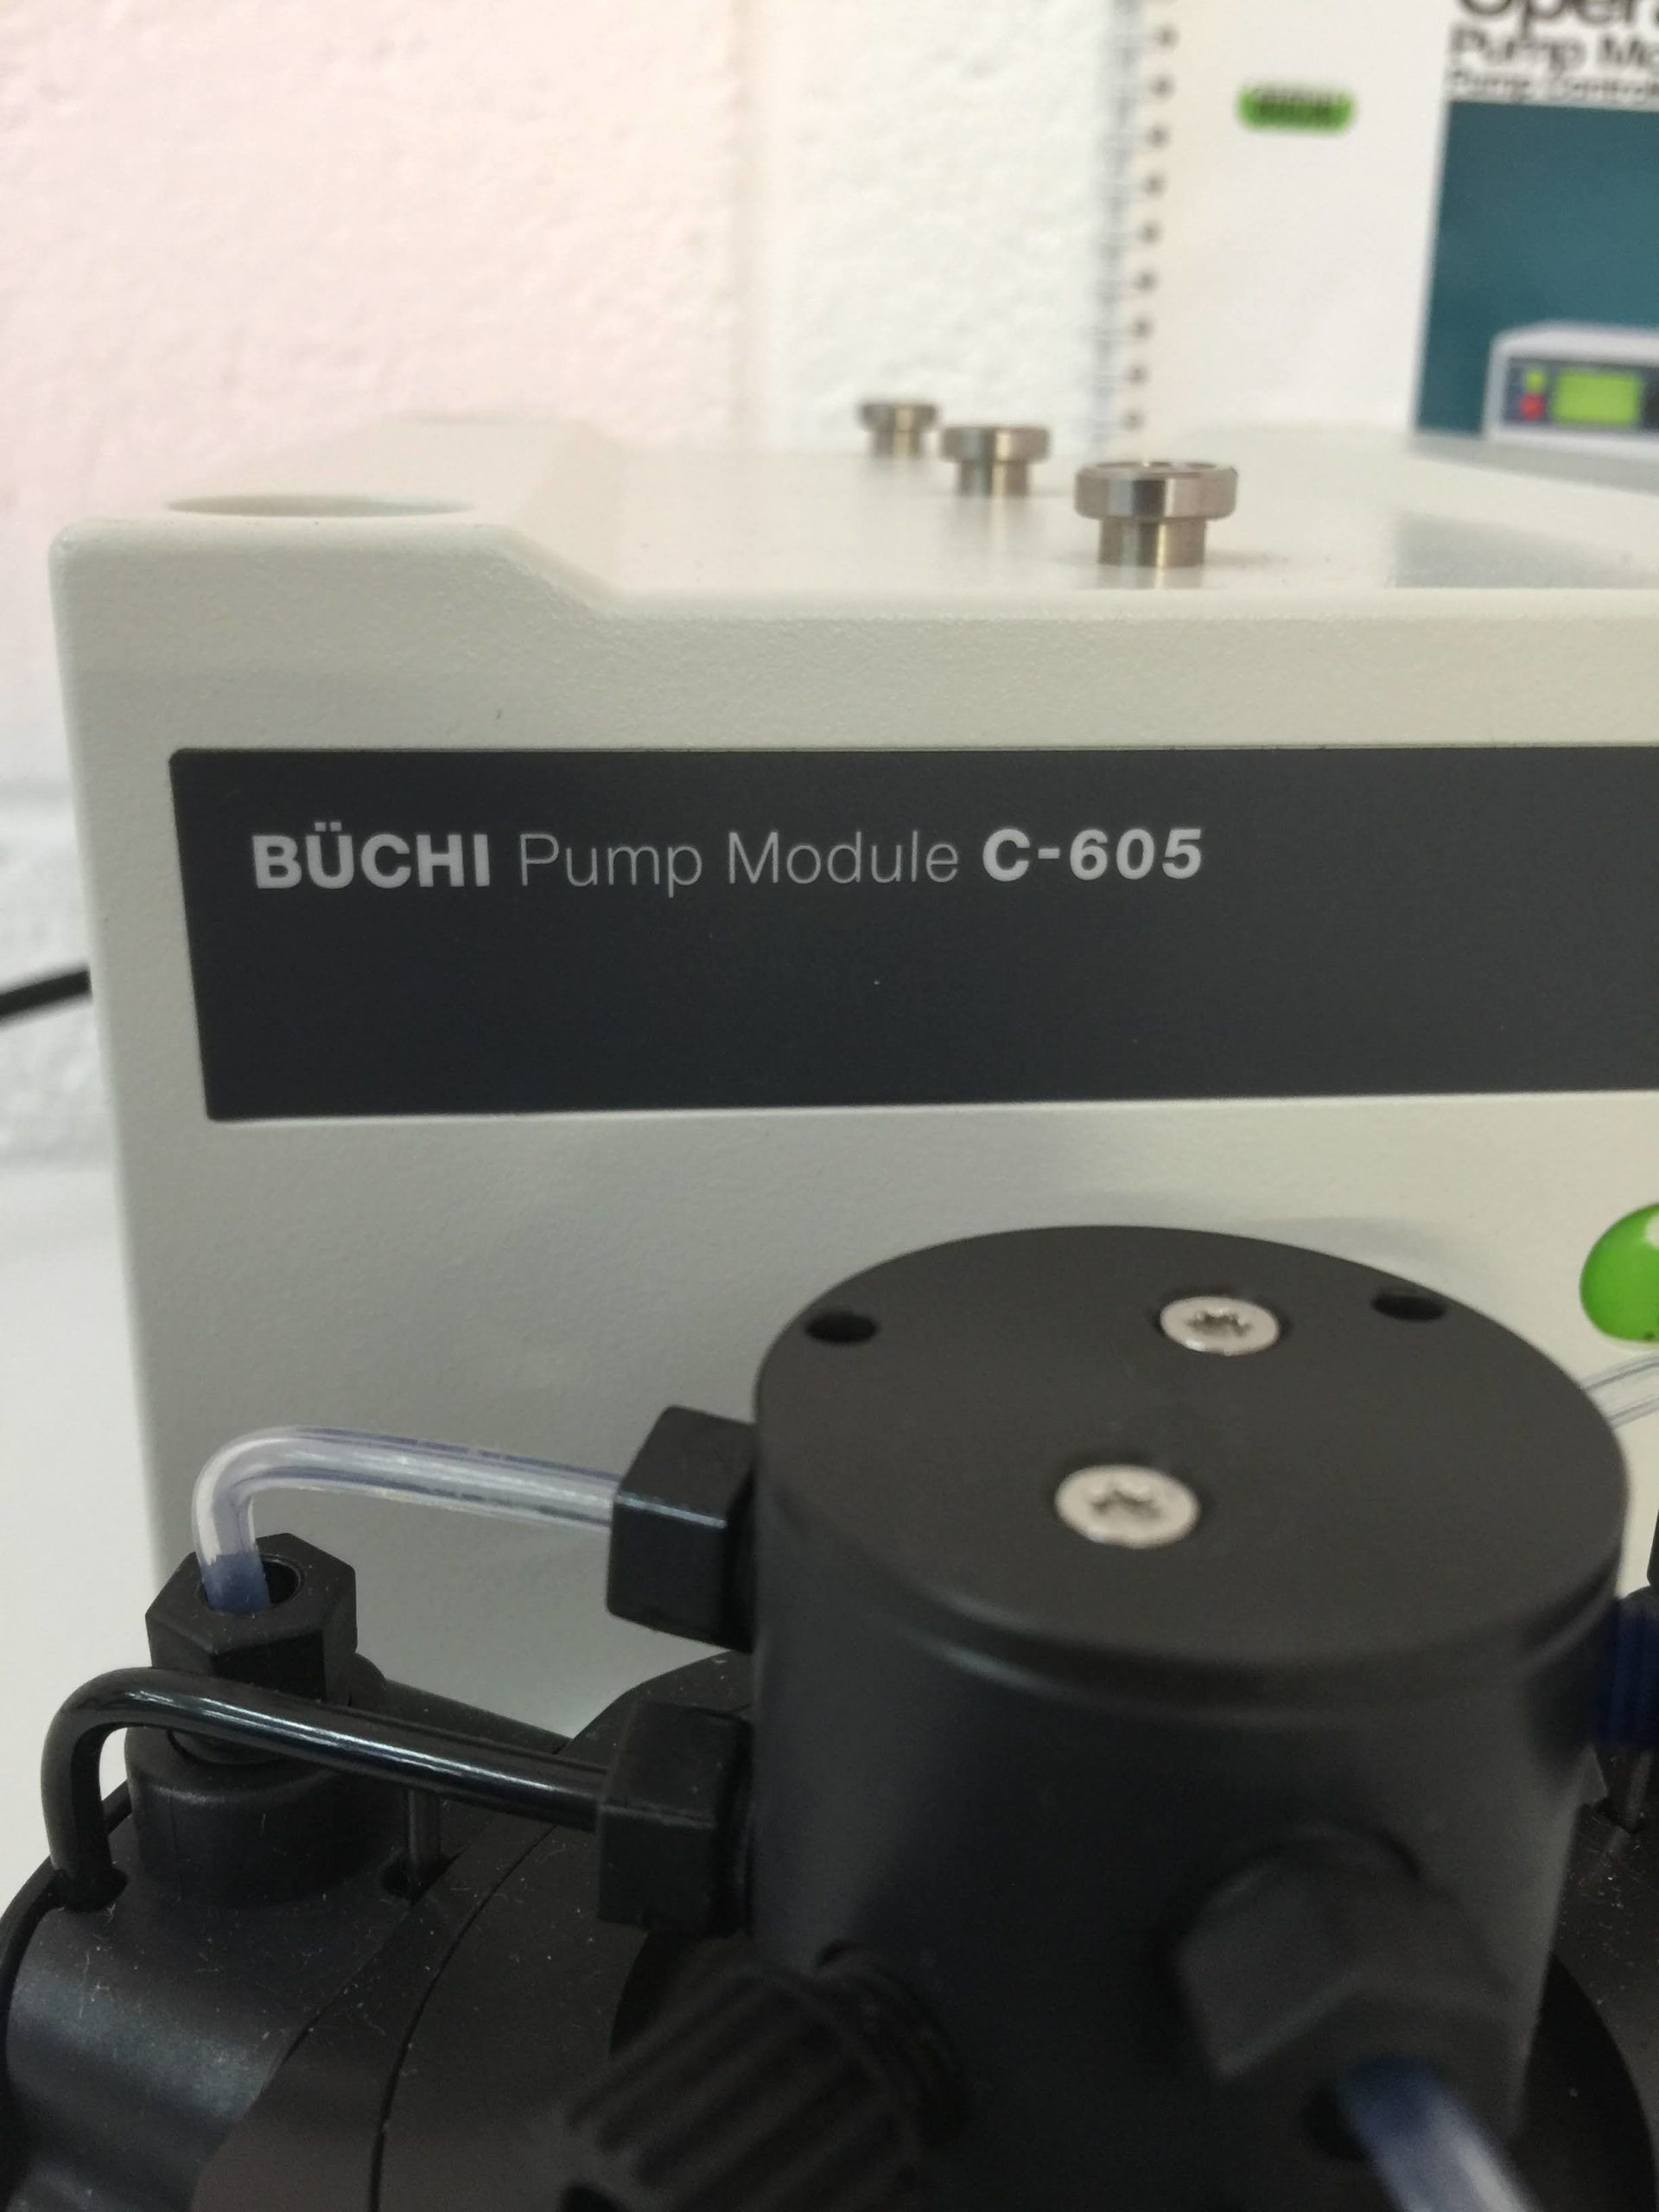 buchi pump module c-605